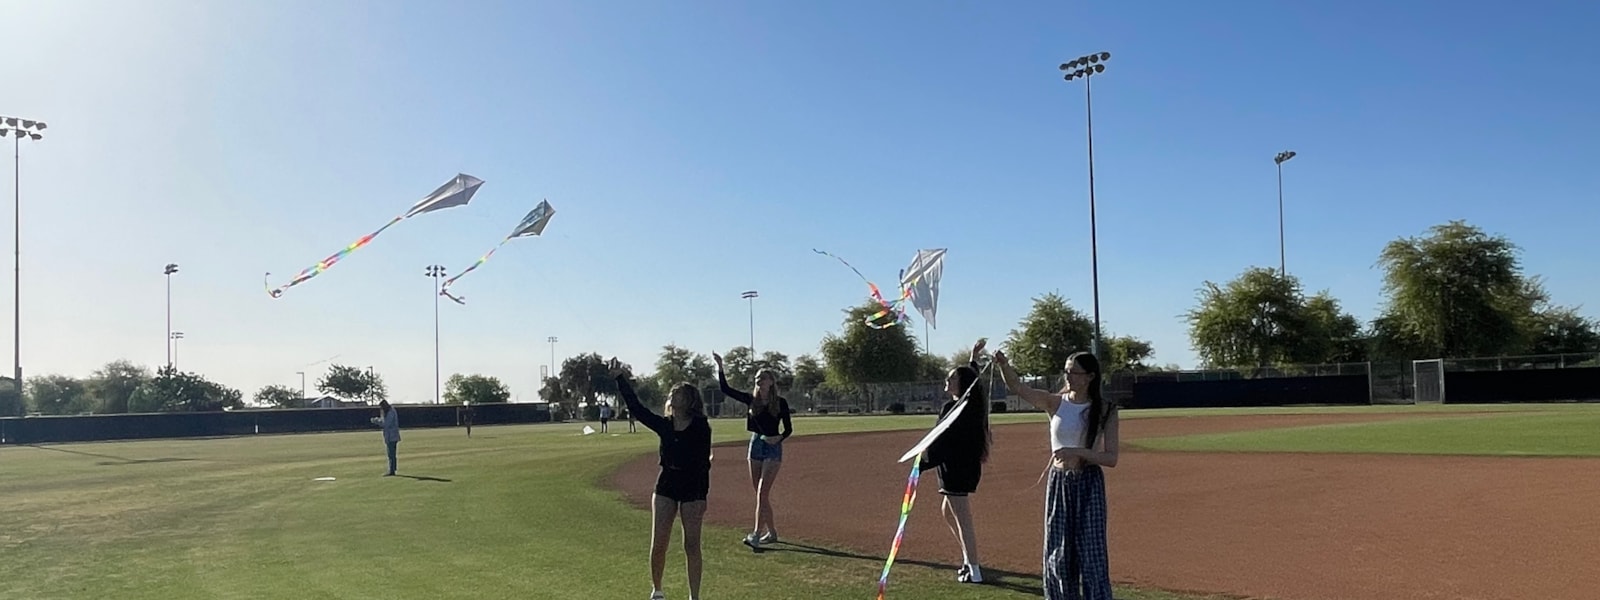 Students on grassy field flying kites